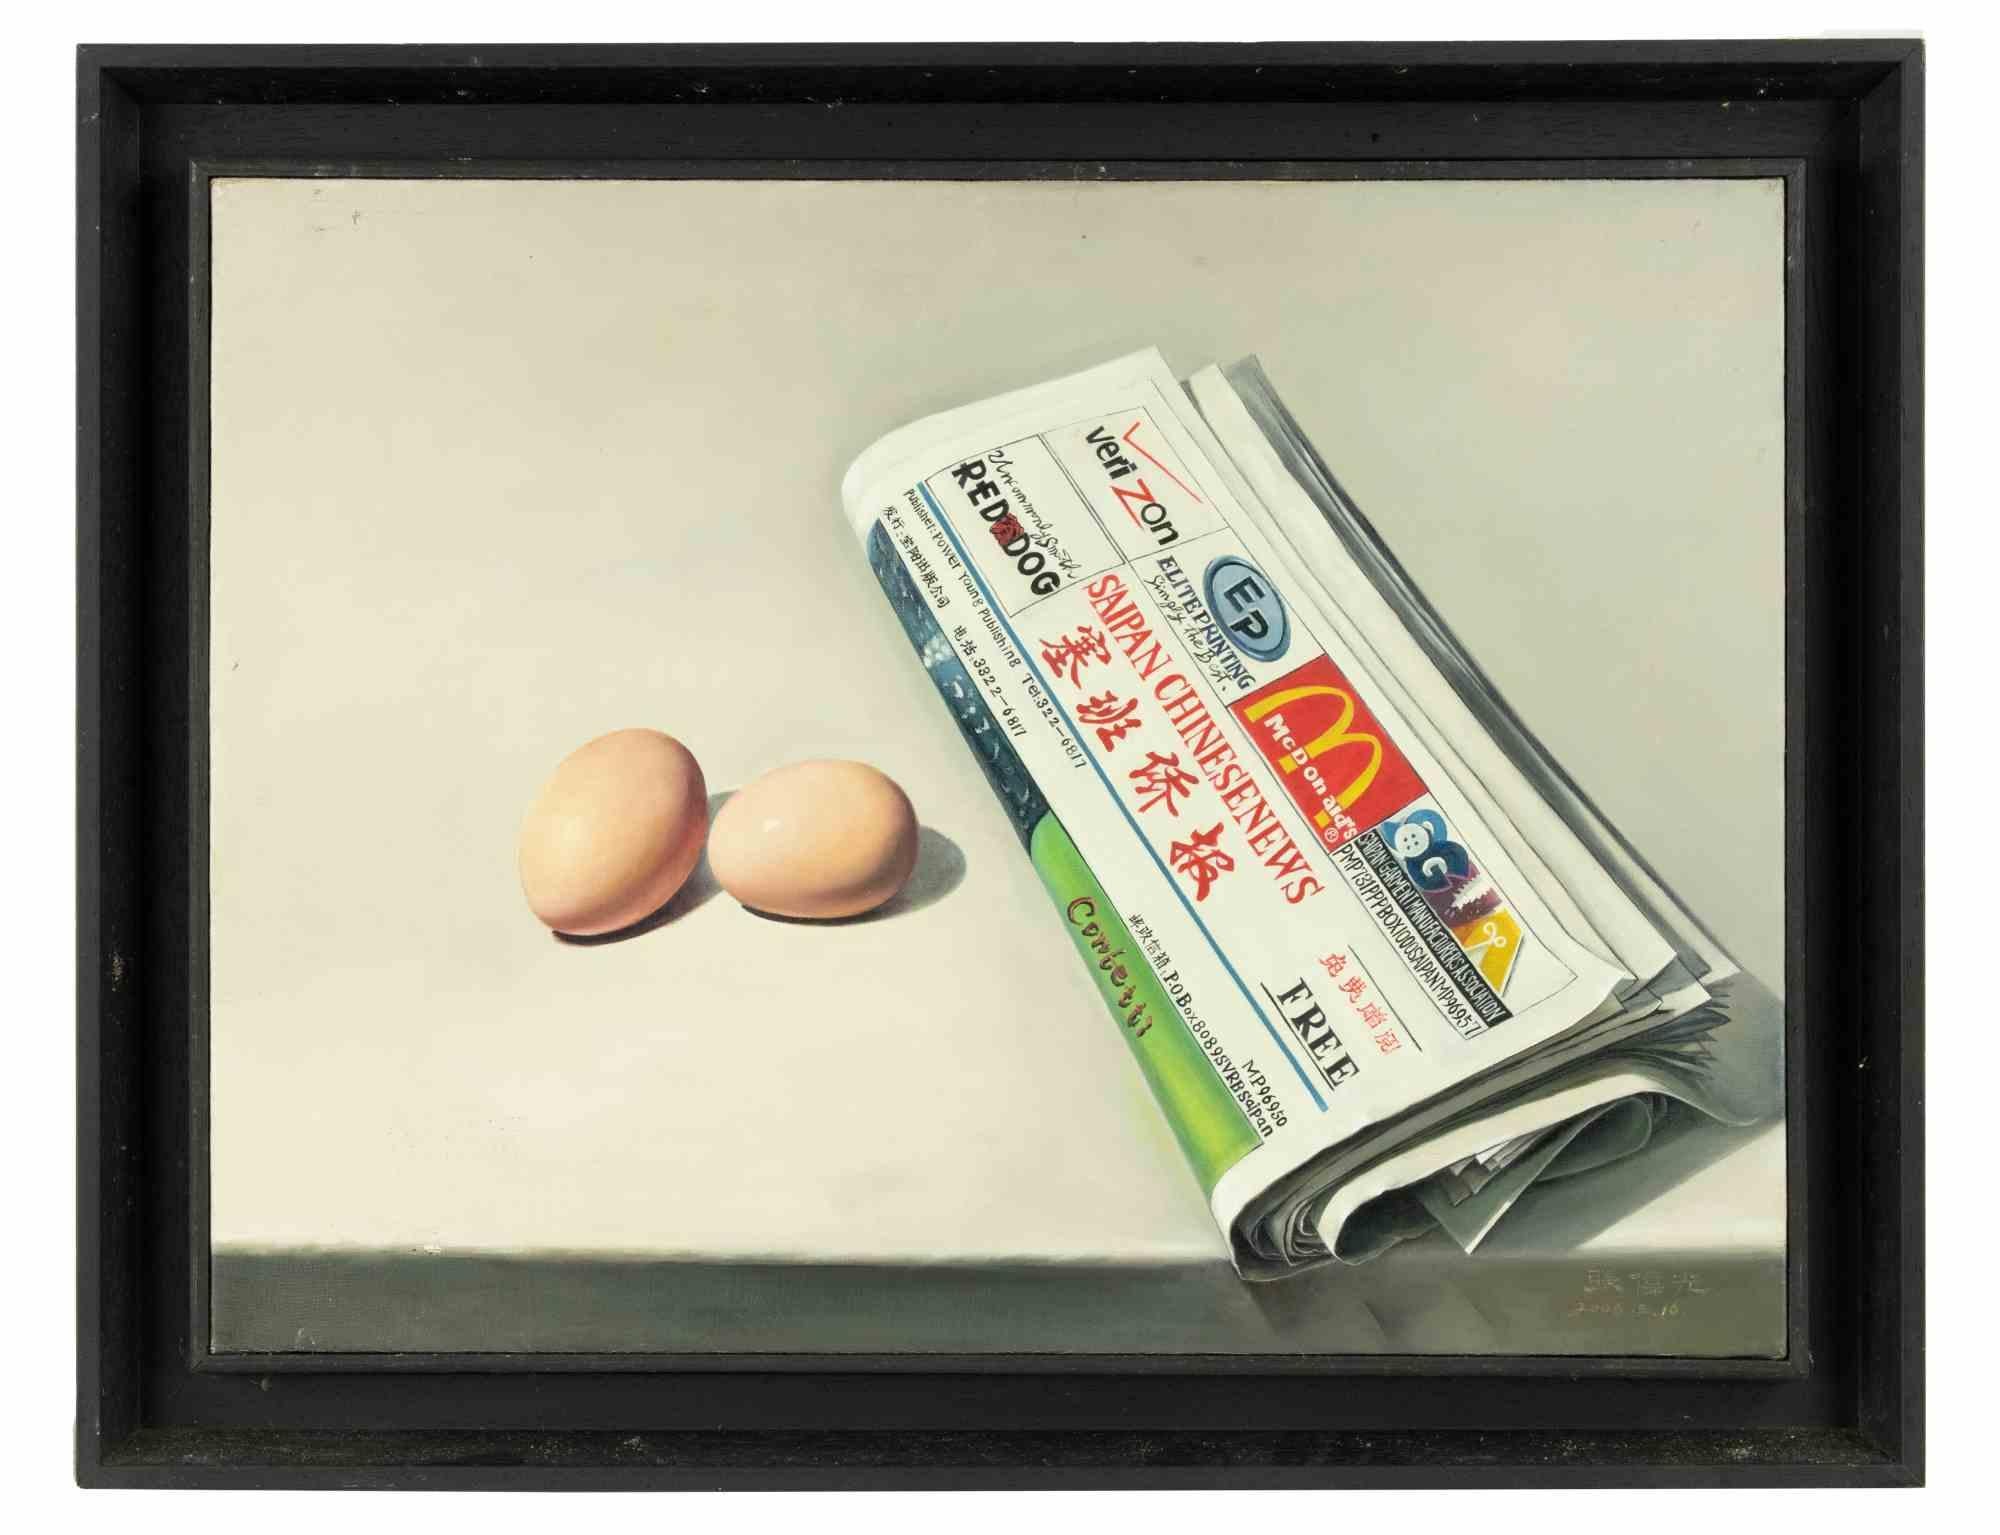 Eier und Zeitung – Ölgemälde von Zhang Wei Guang – 2006